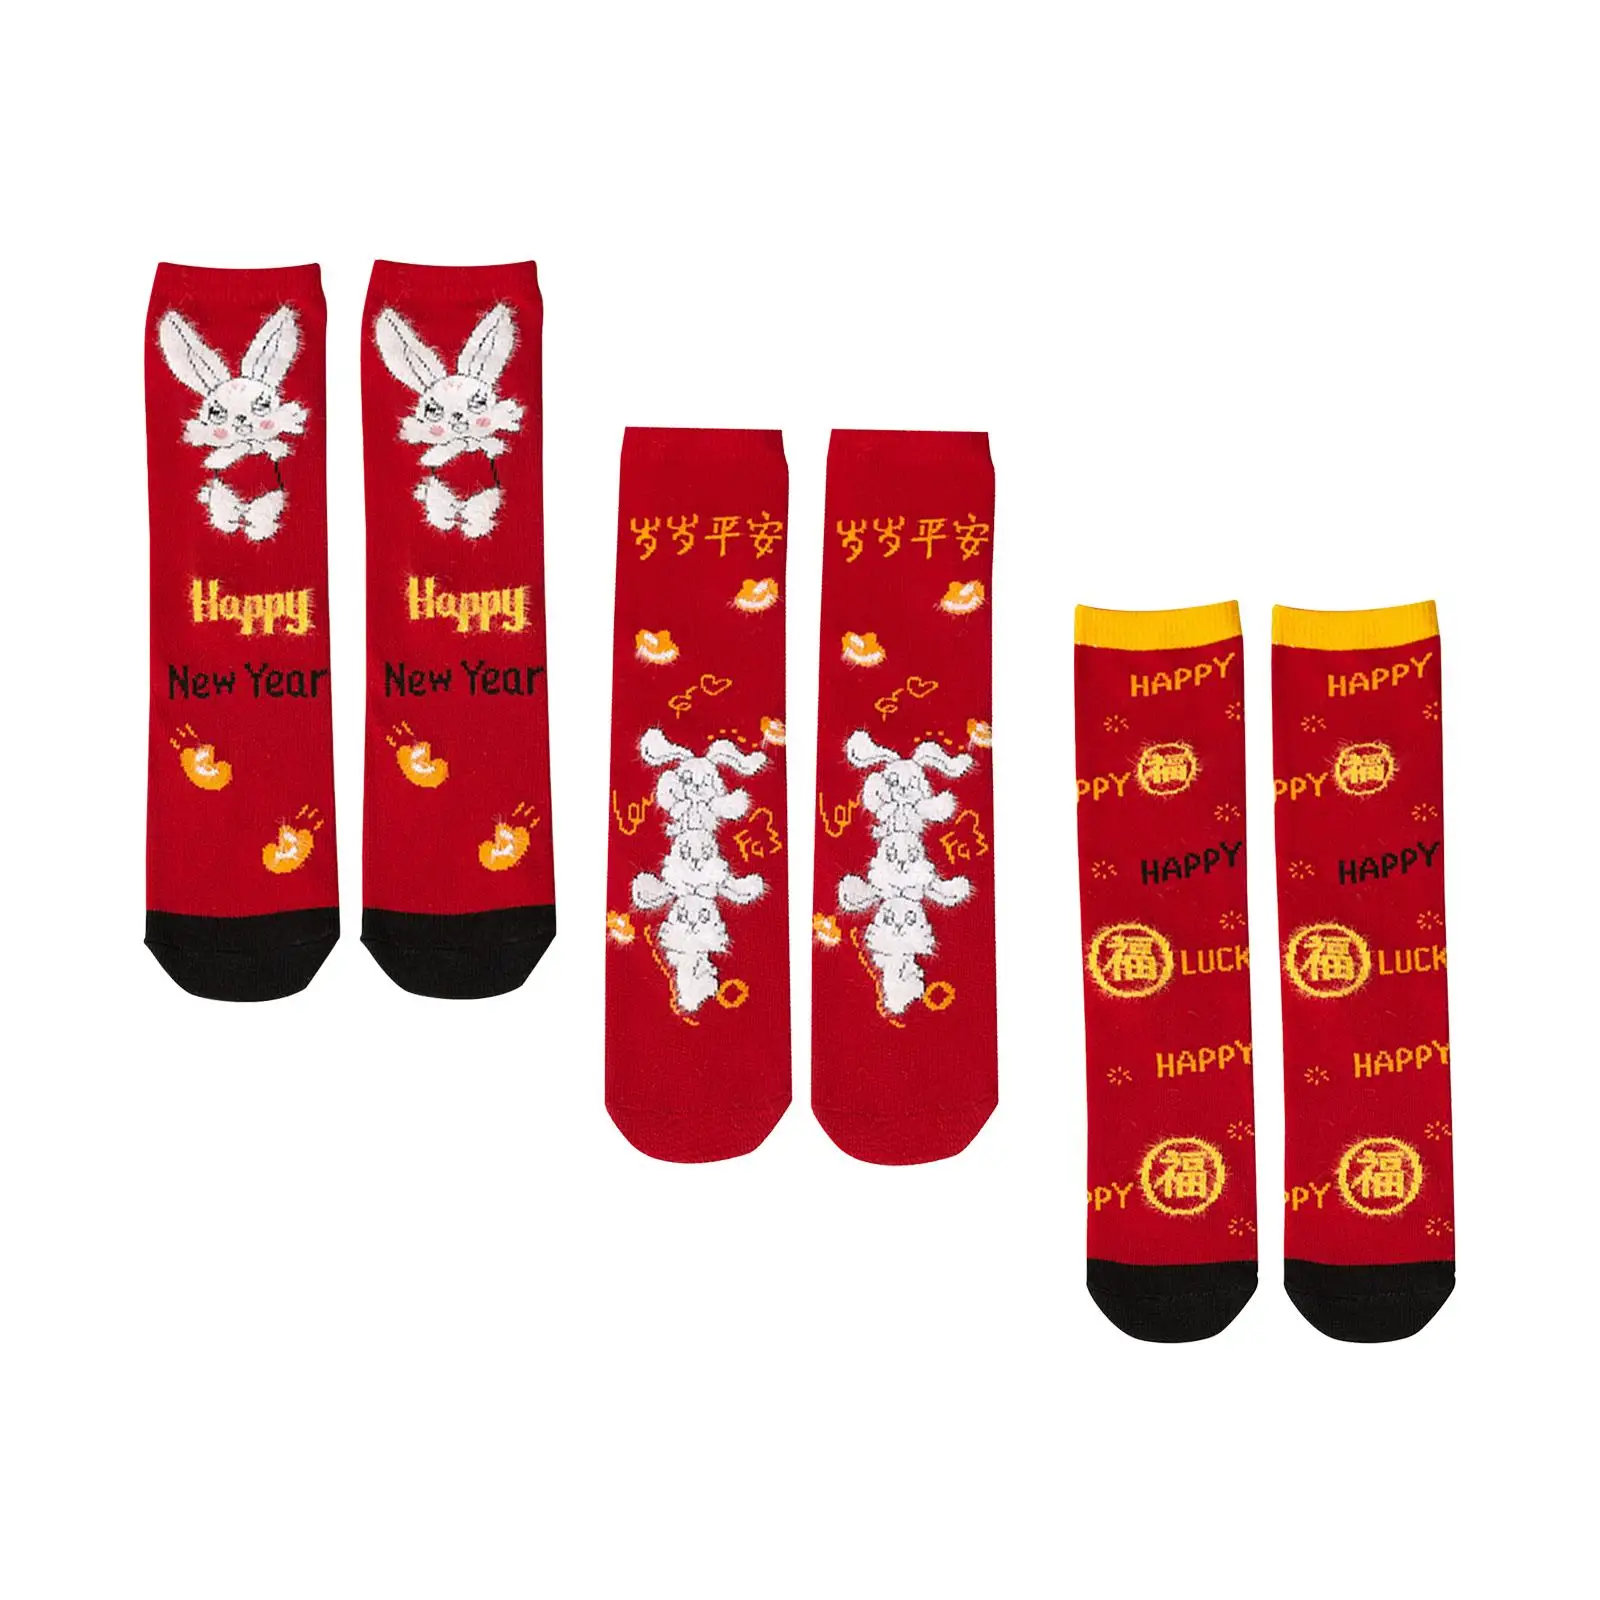 Novelty Children Socks Winter Warm Socks New Year Socks Casual Socks Dress Socks for Children Boy Girls Toddlers Birthday Gifts